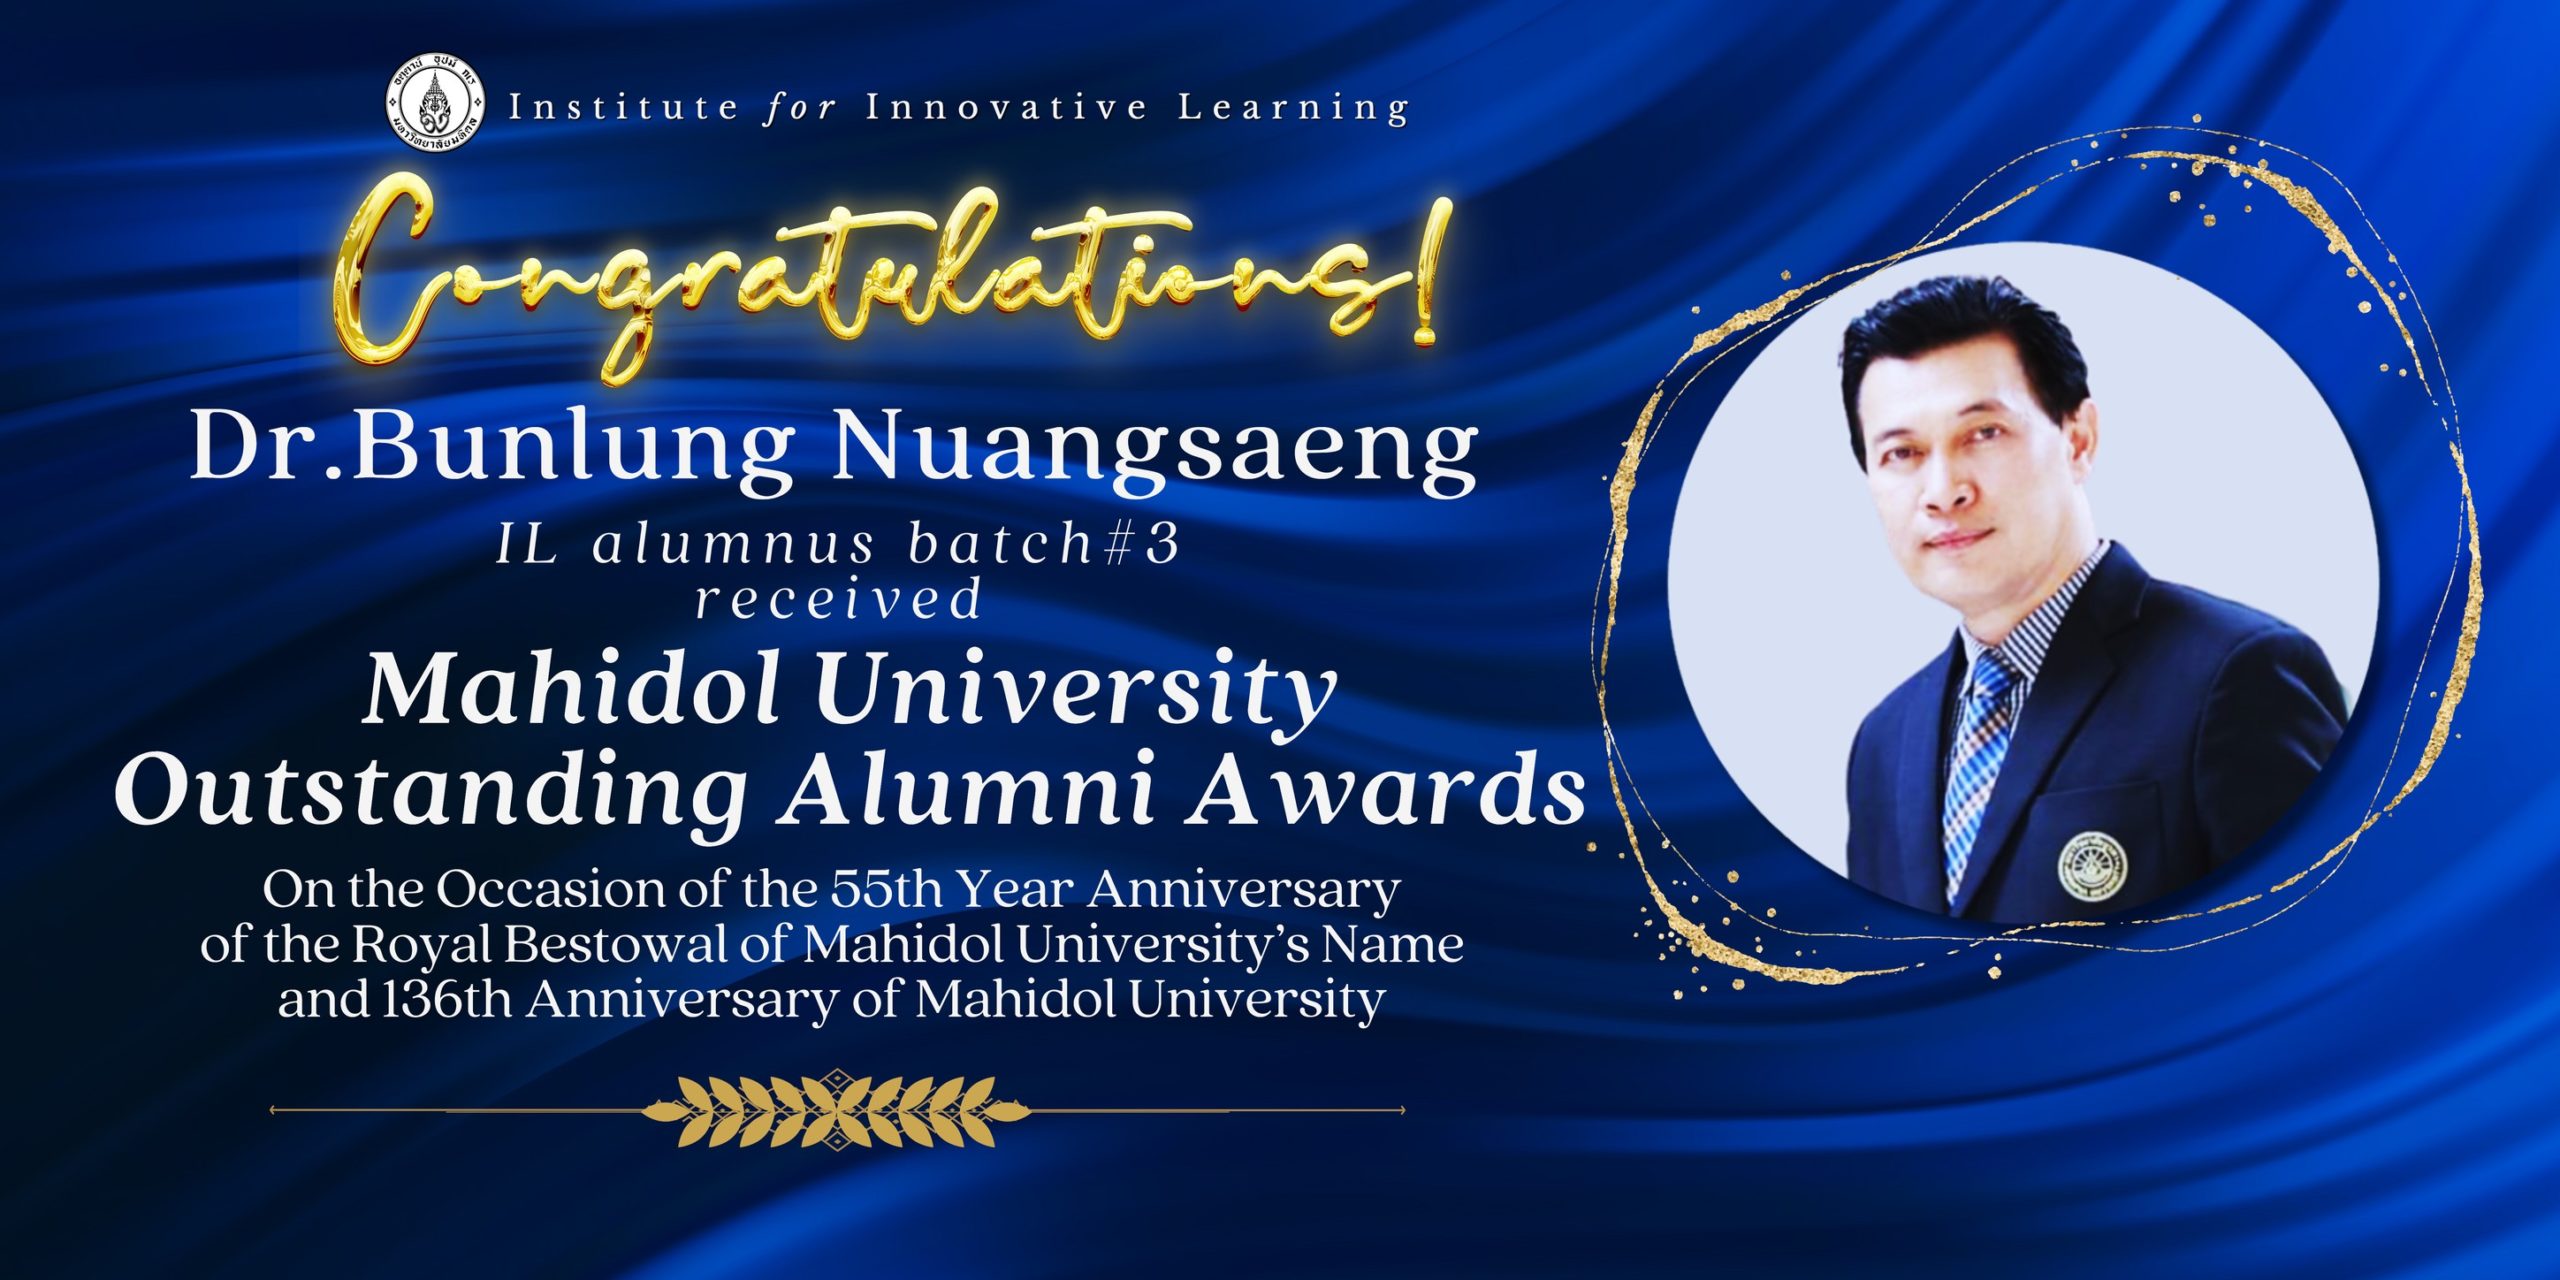 Congratulations to Dr.Bunlung Nuangsaeng